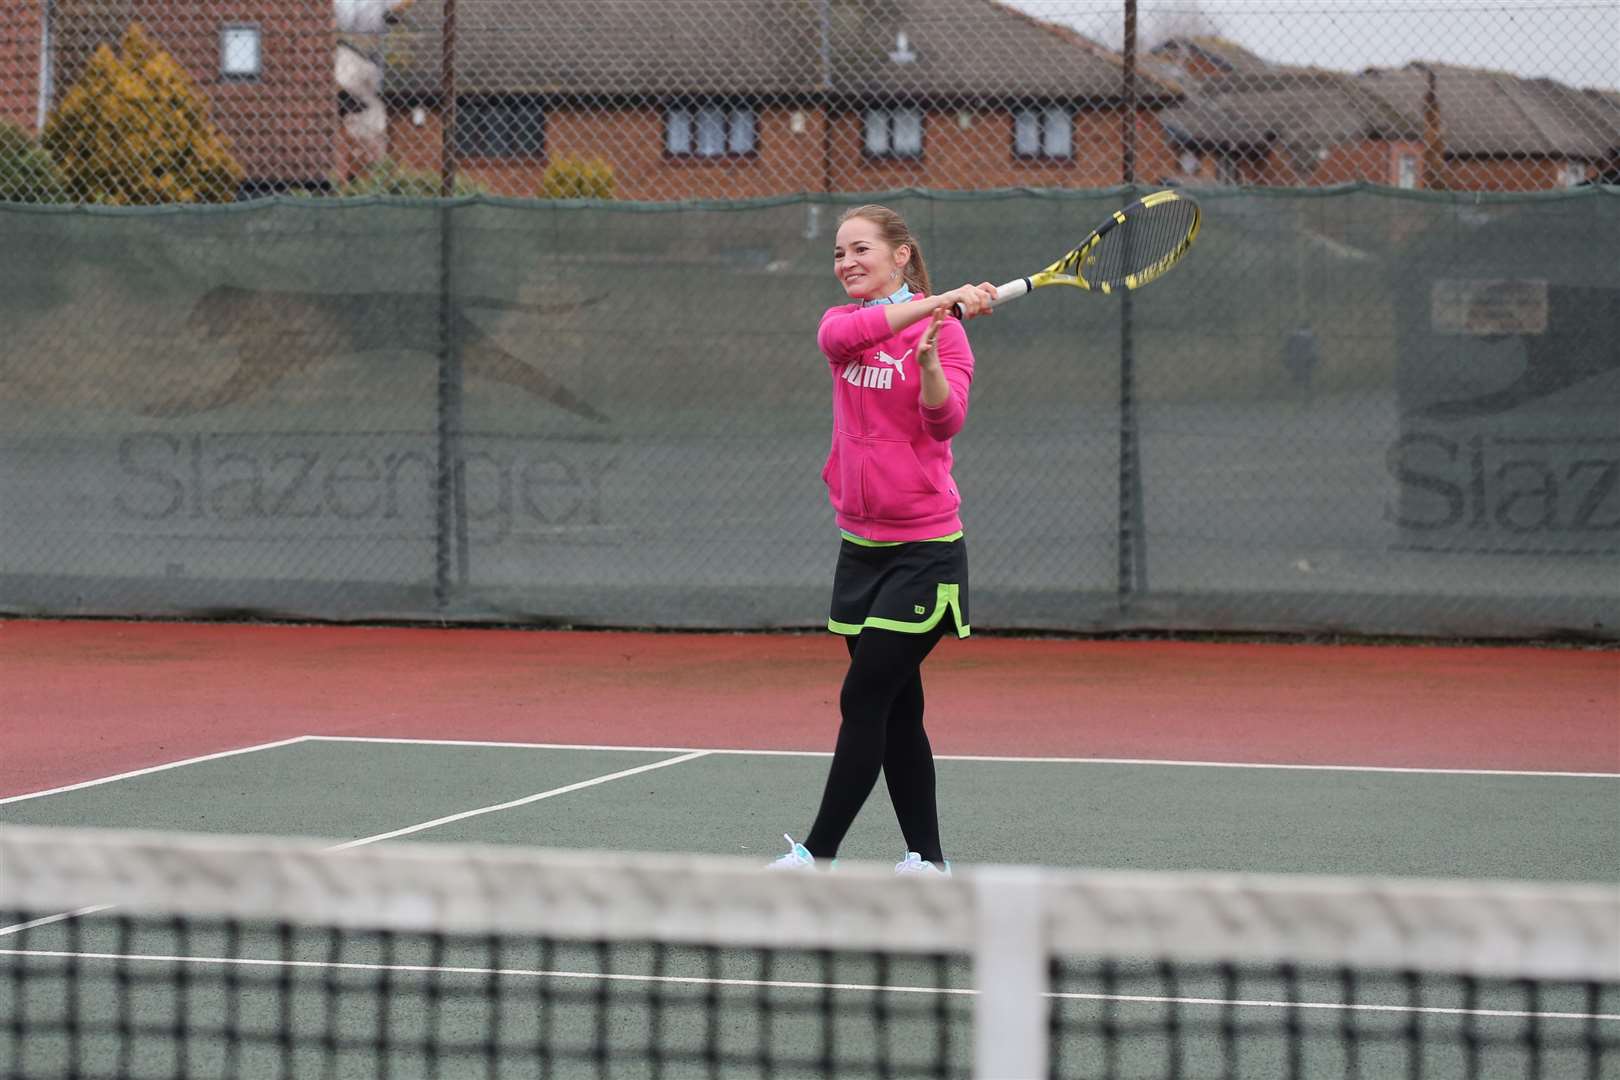 Club member Tatjana Strokatova plays singles tennis